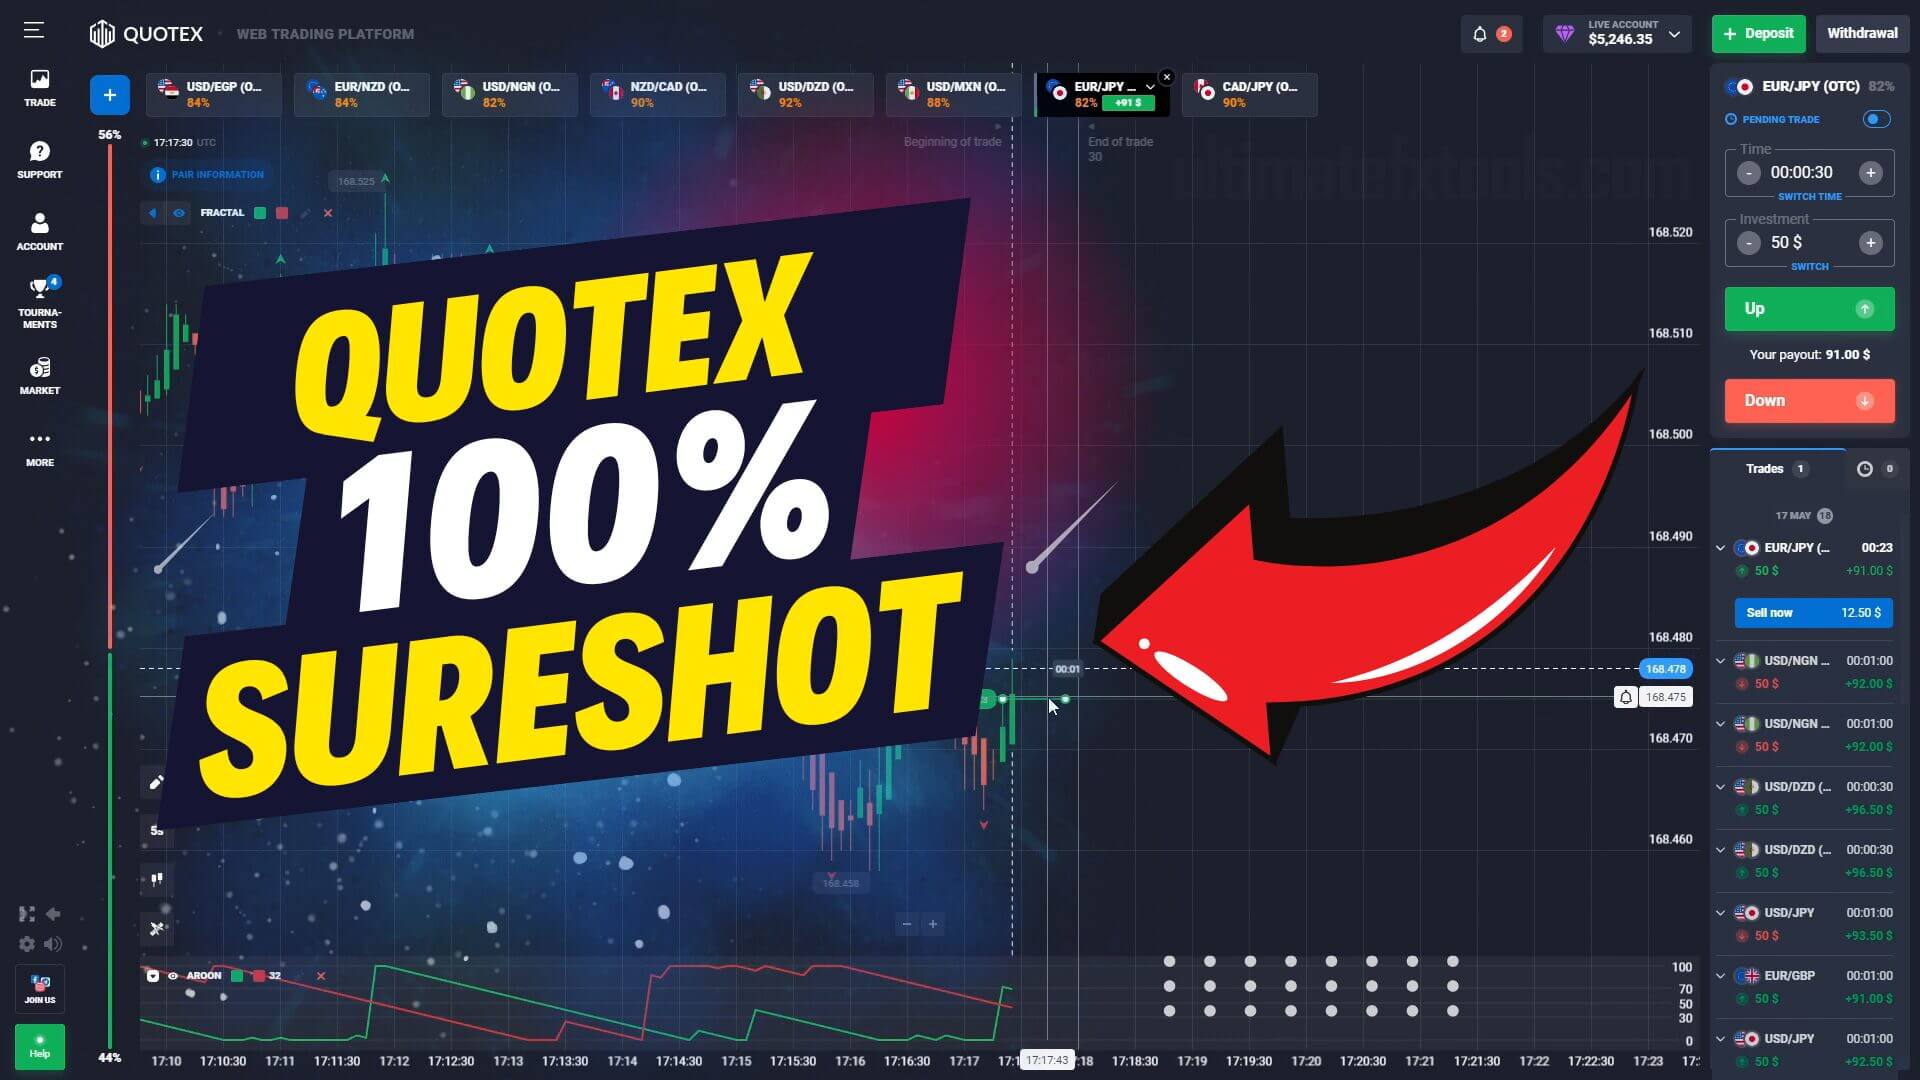 Quotex 100% Sureshot OTC Trading